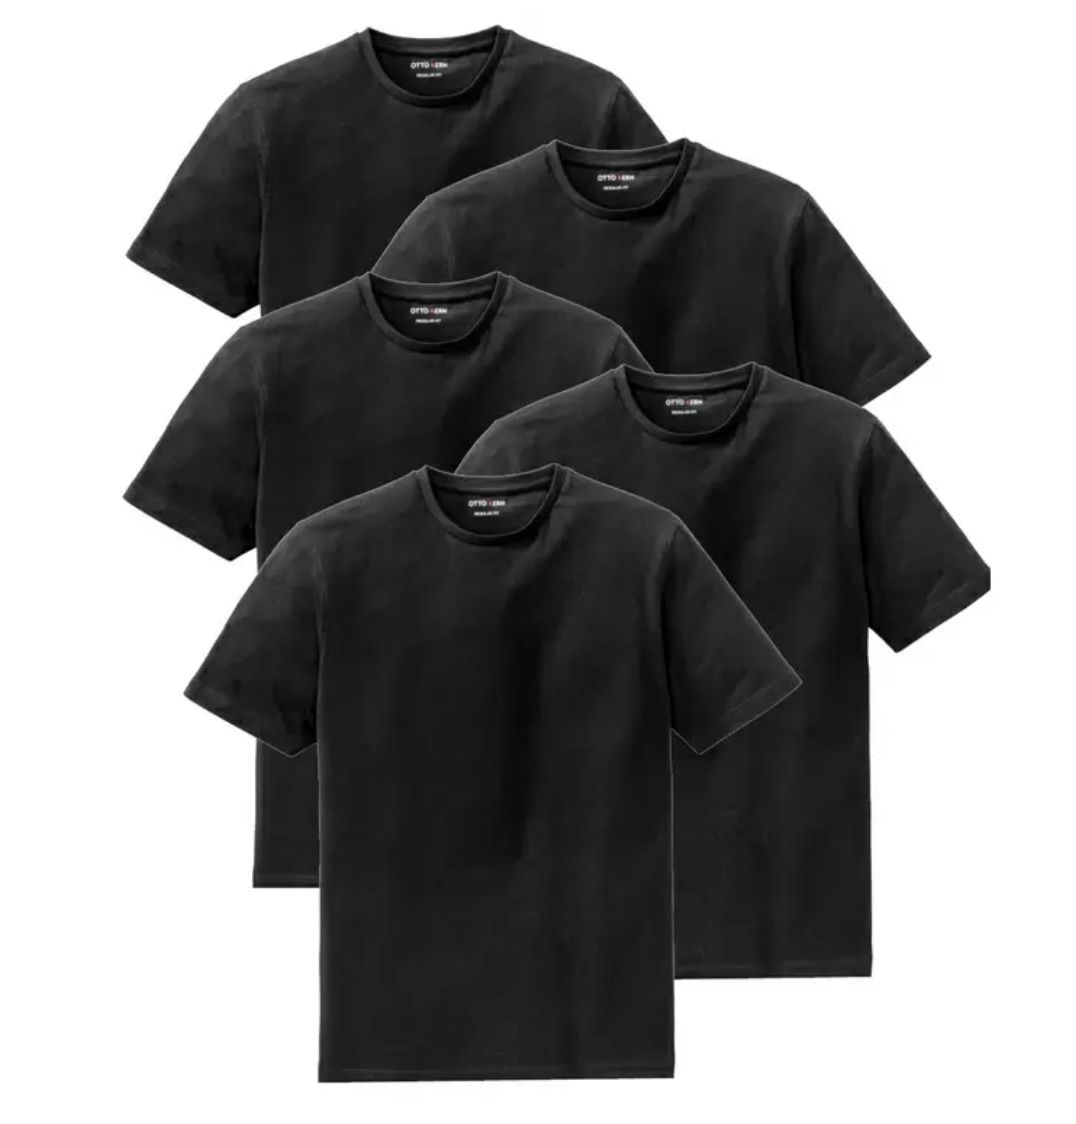 5er Pack OTTO KERN T-Shirts für 27,99€ (statt 40€)